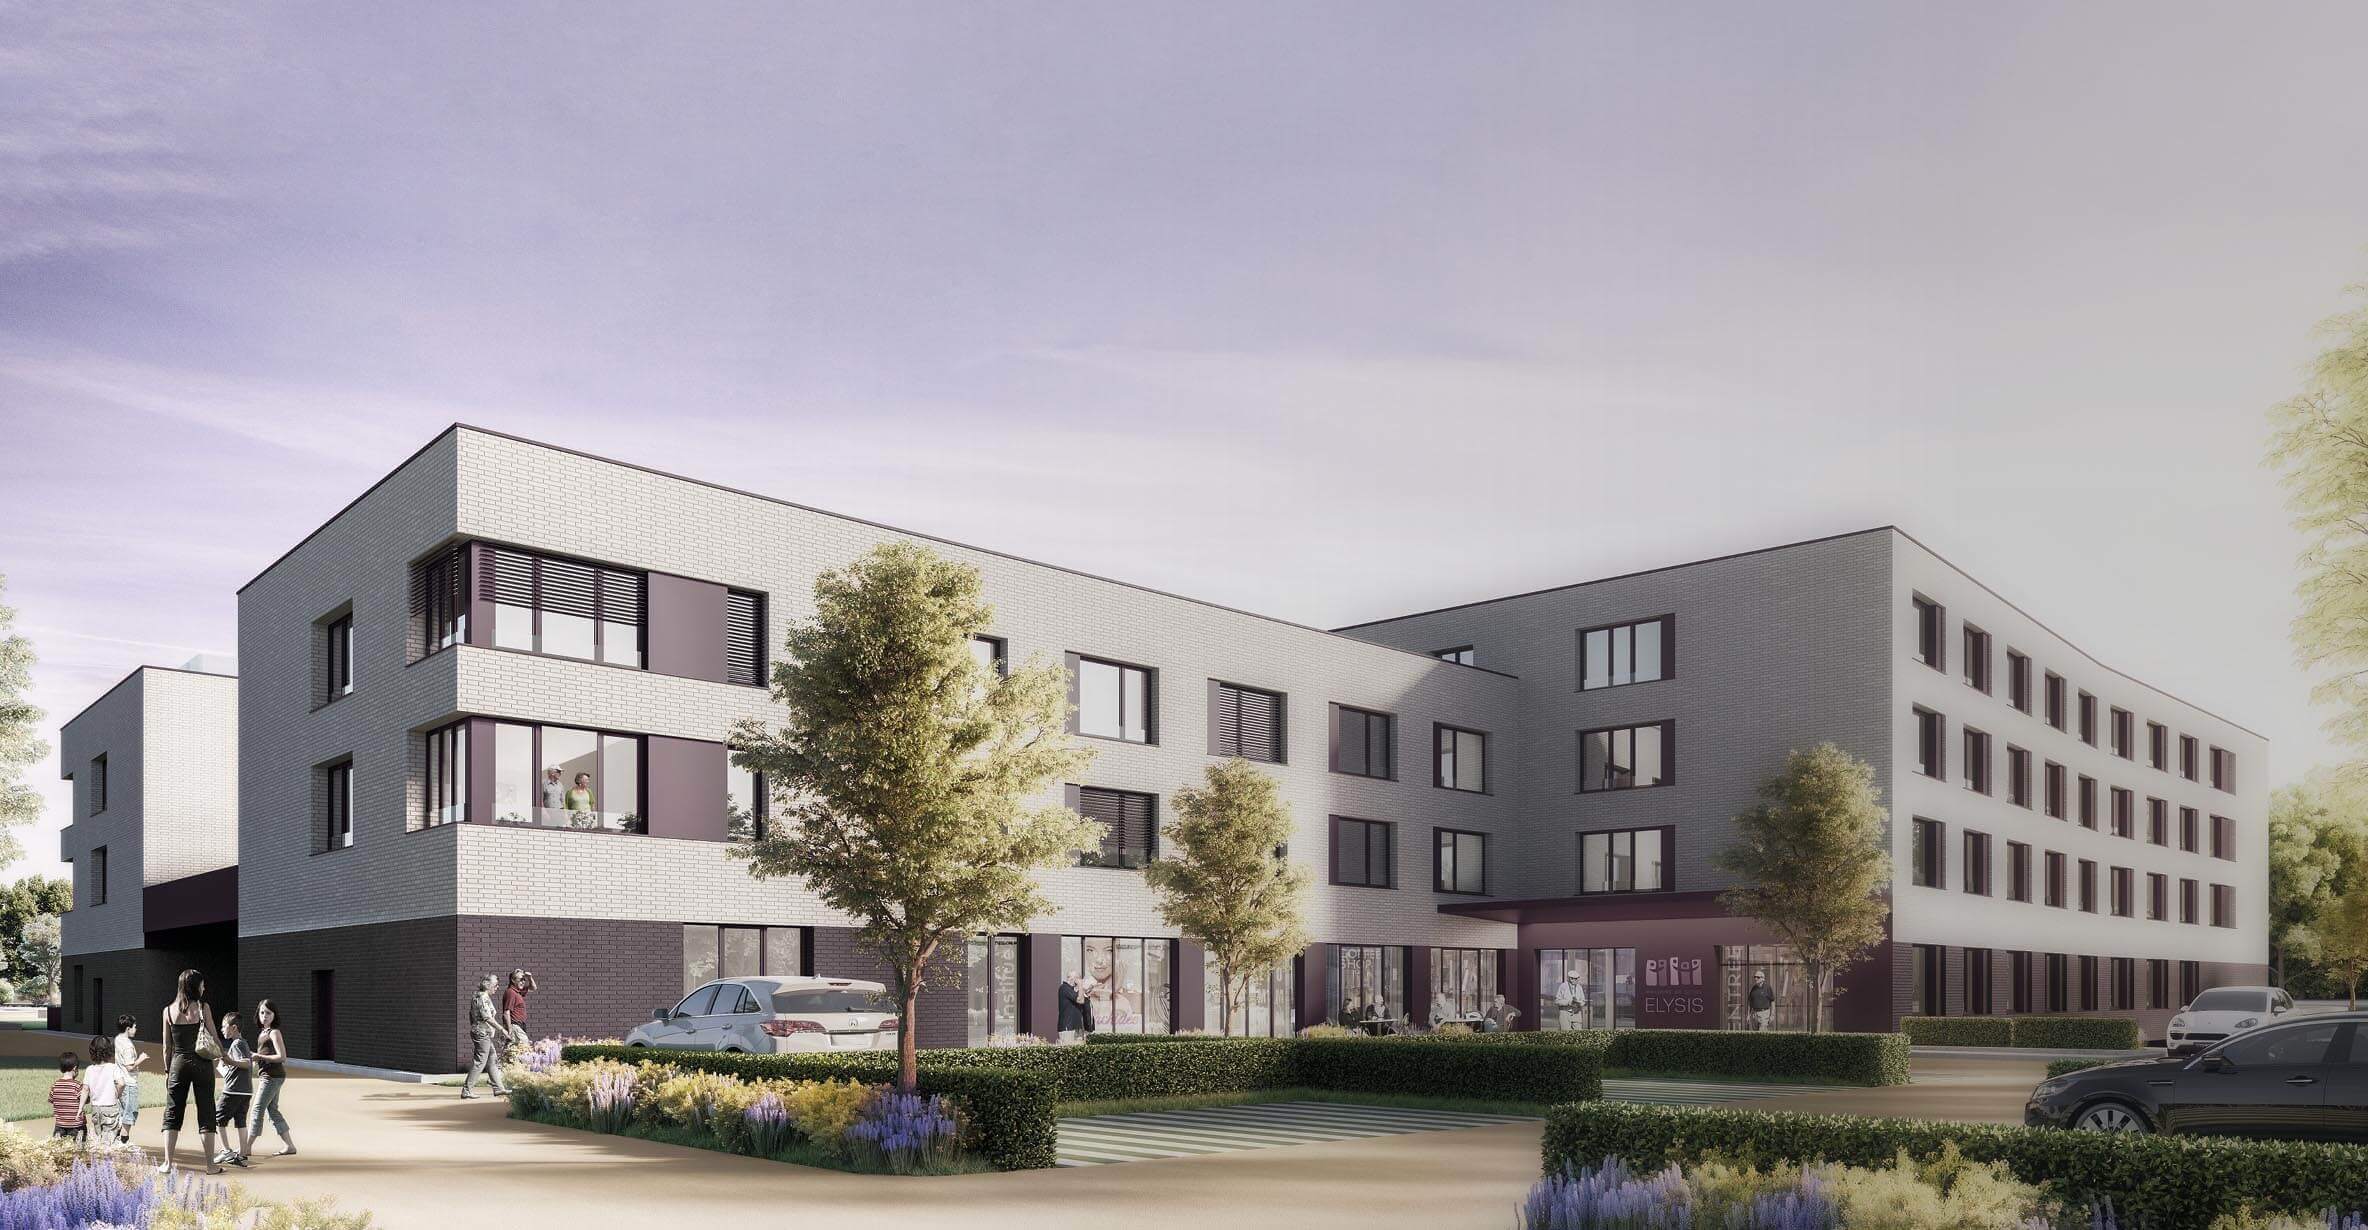 Découvrez notre nouvelle maison de soins à Esch-sur-Alzette (ouverture 2023)